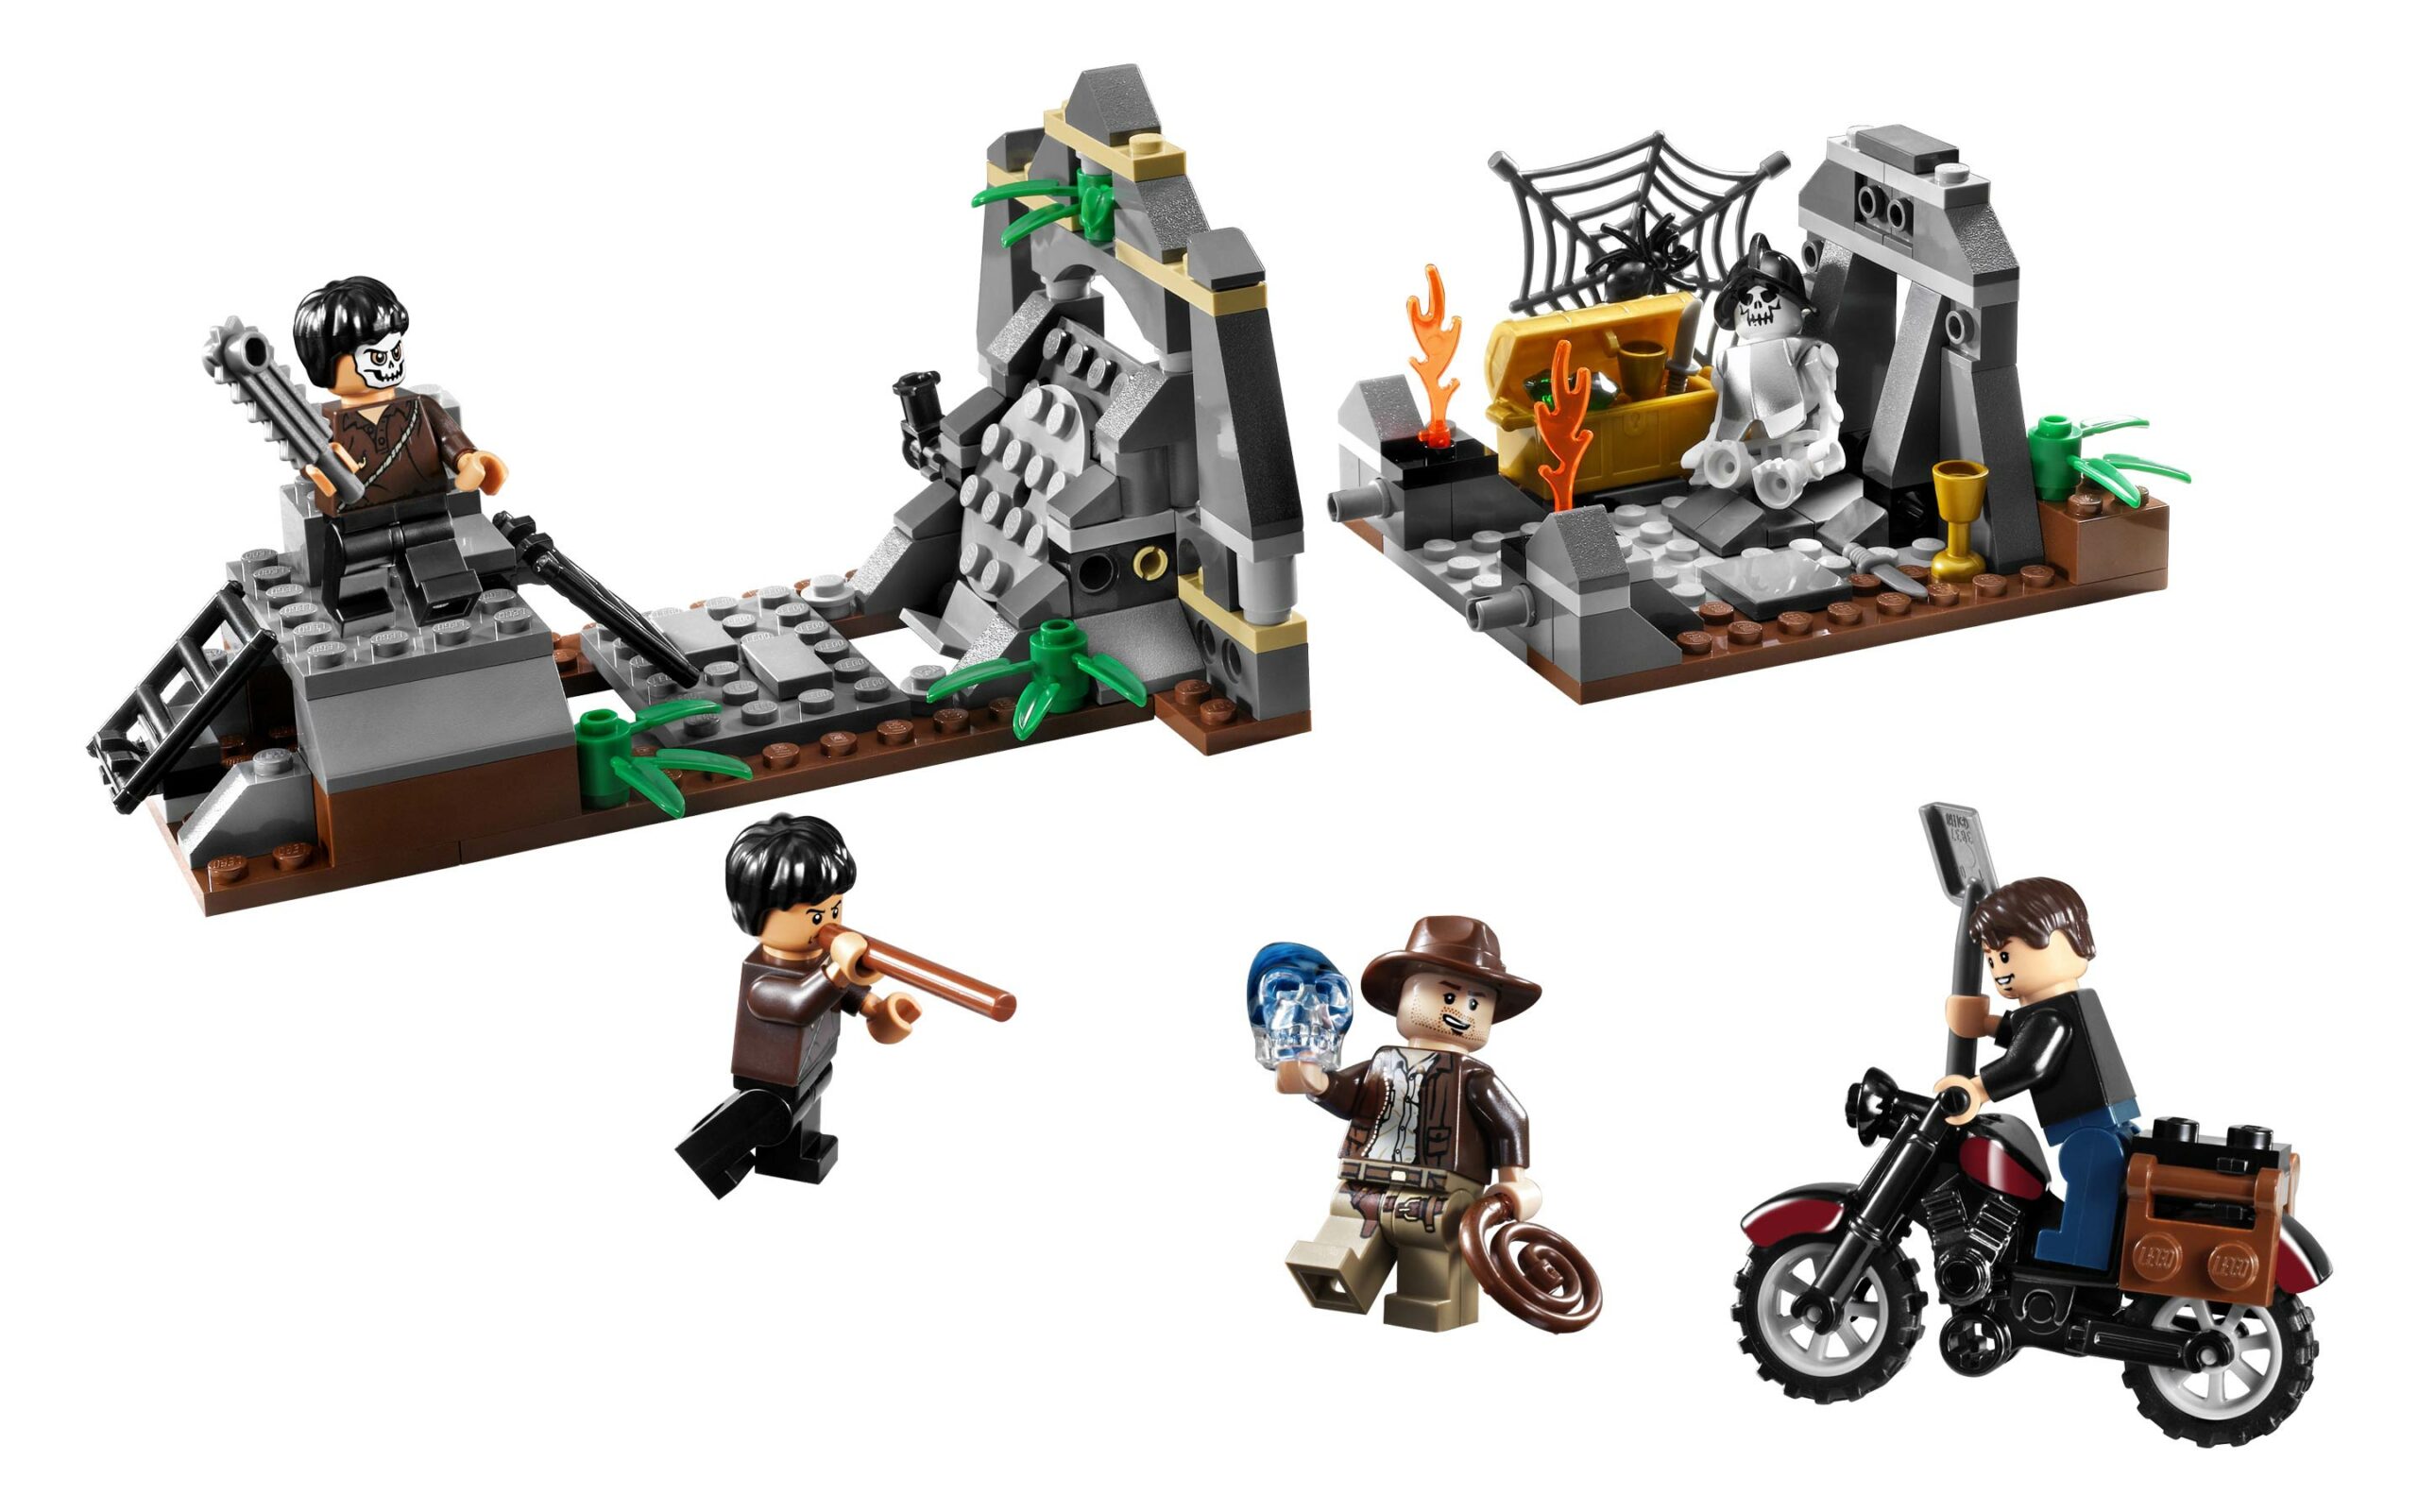 LEGO Indiana Jones - Brick Fanatics - LEGO News, Reviews and Builds